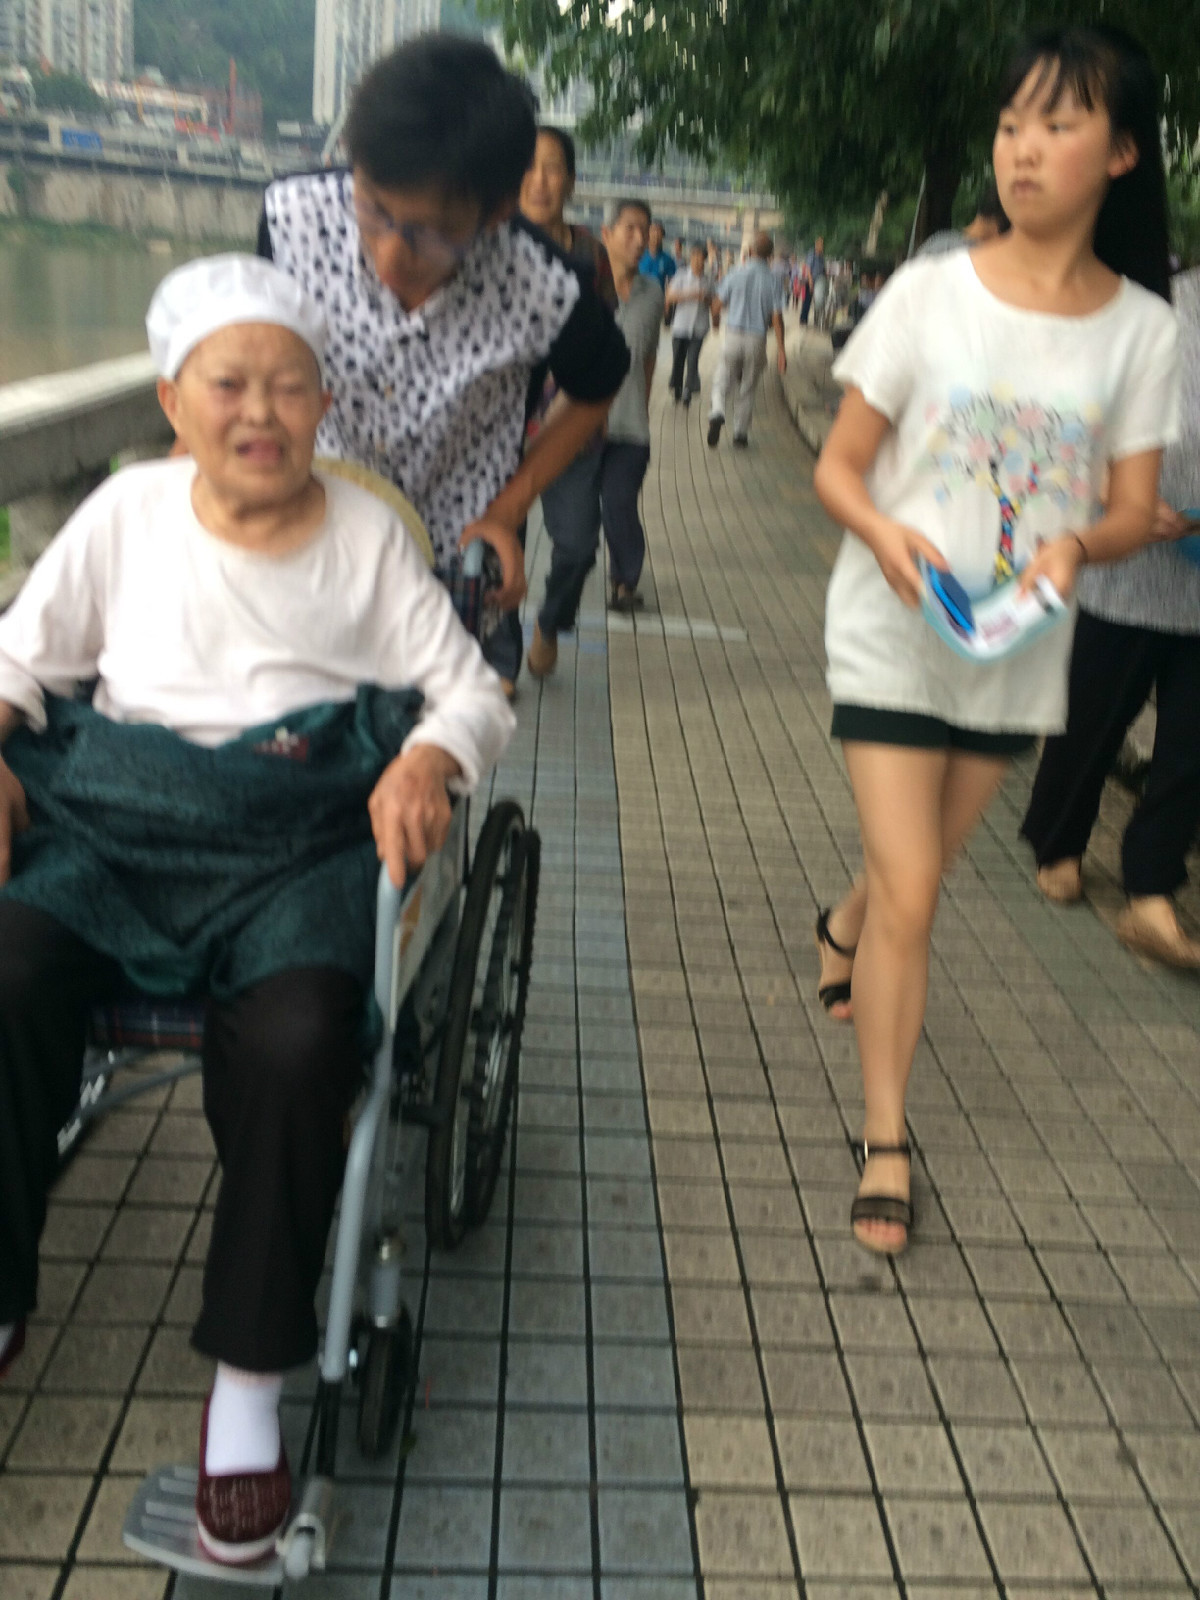 아침에 야외에서 걷는 노인 부부 사진 무료 다운로드 - Lovepik